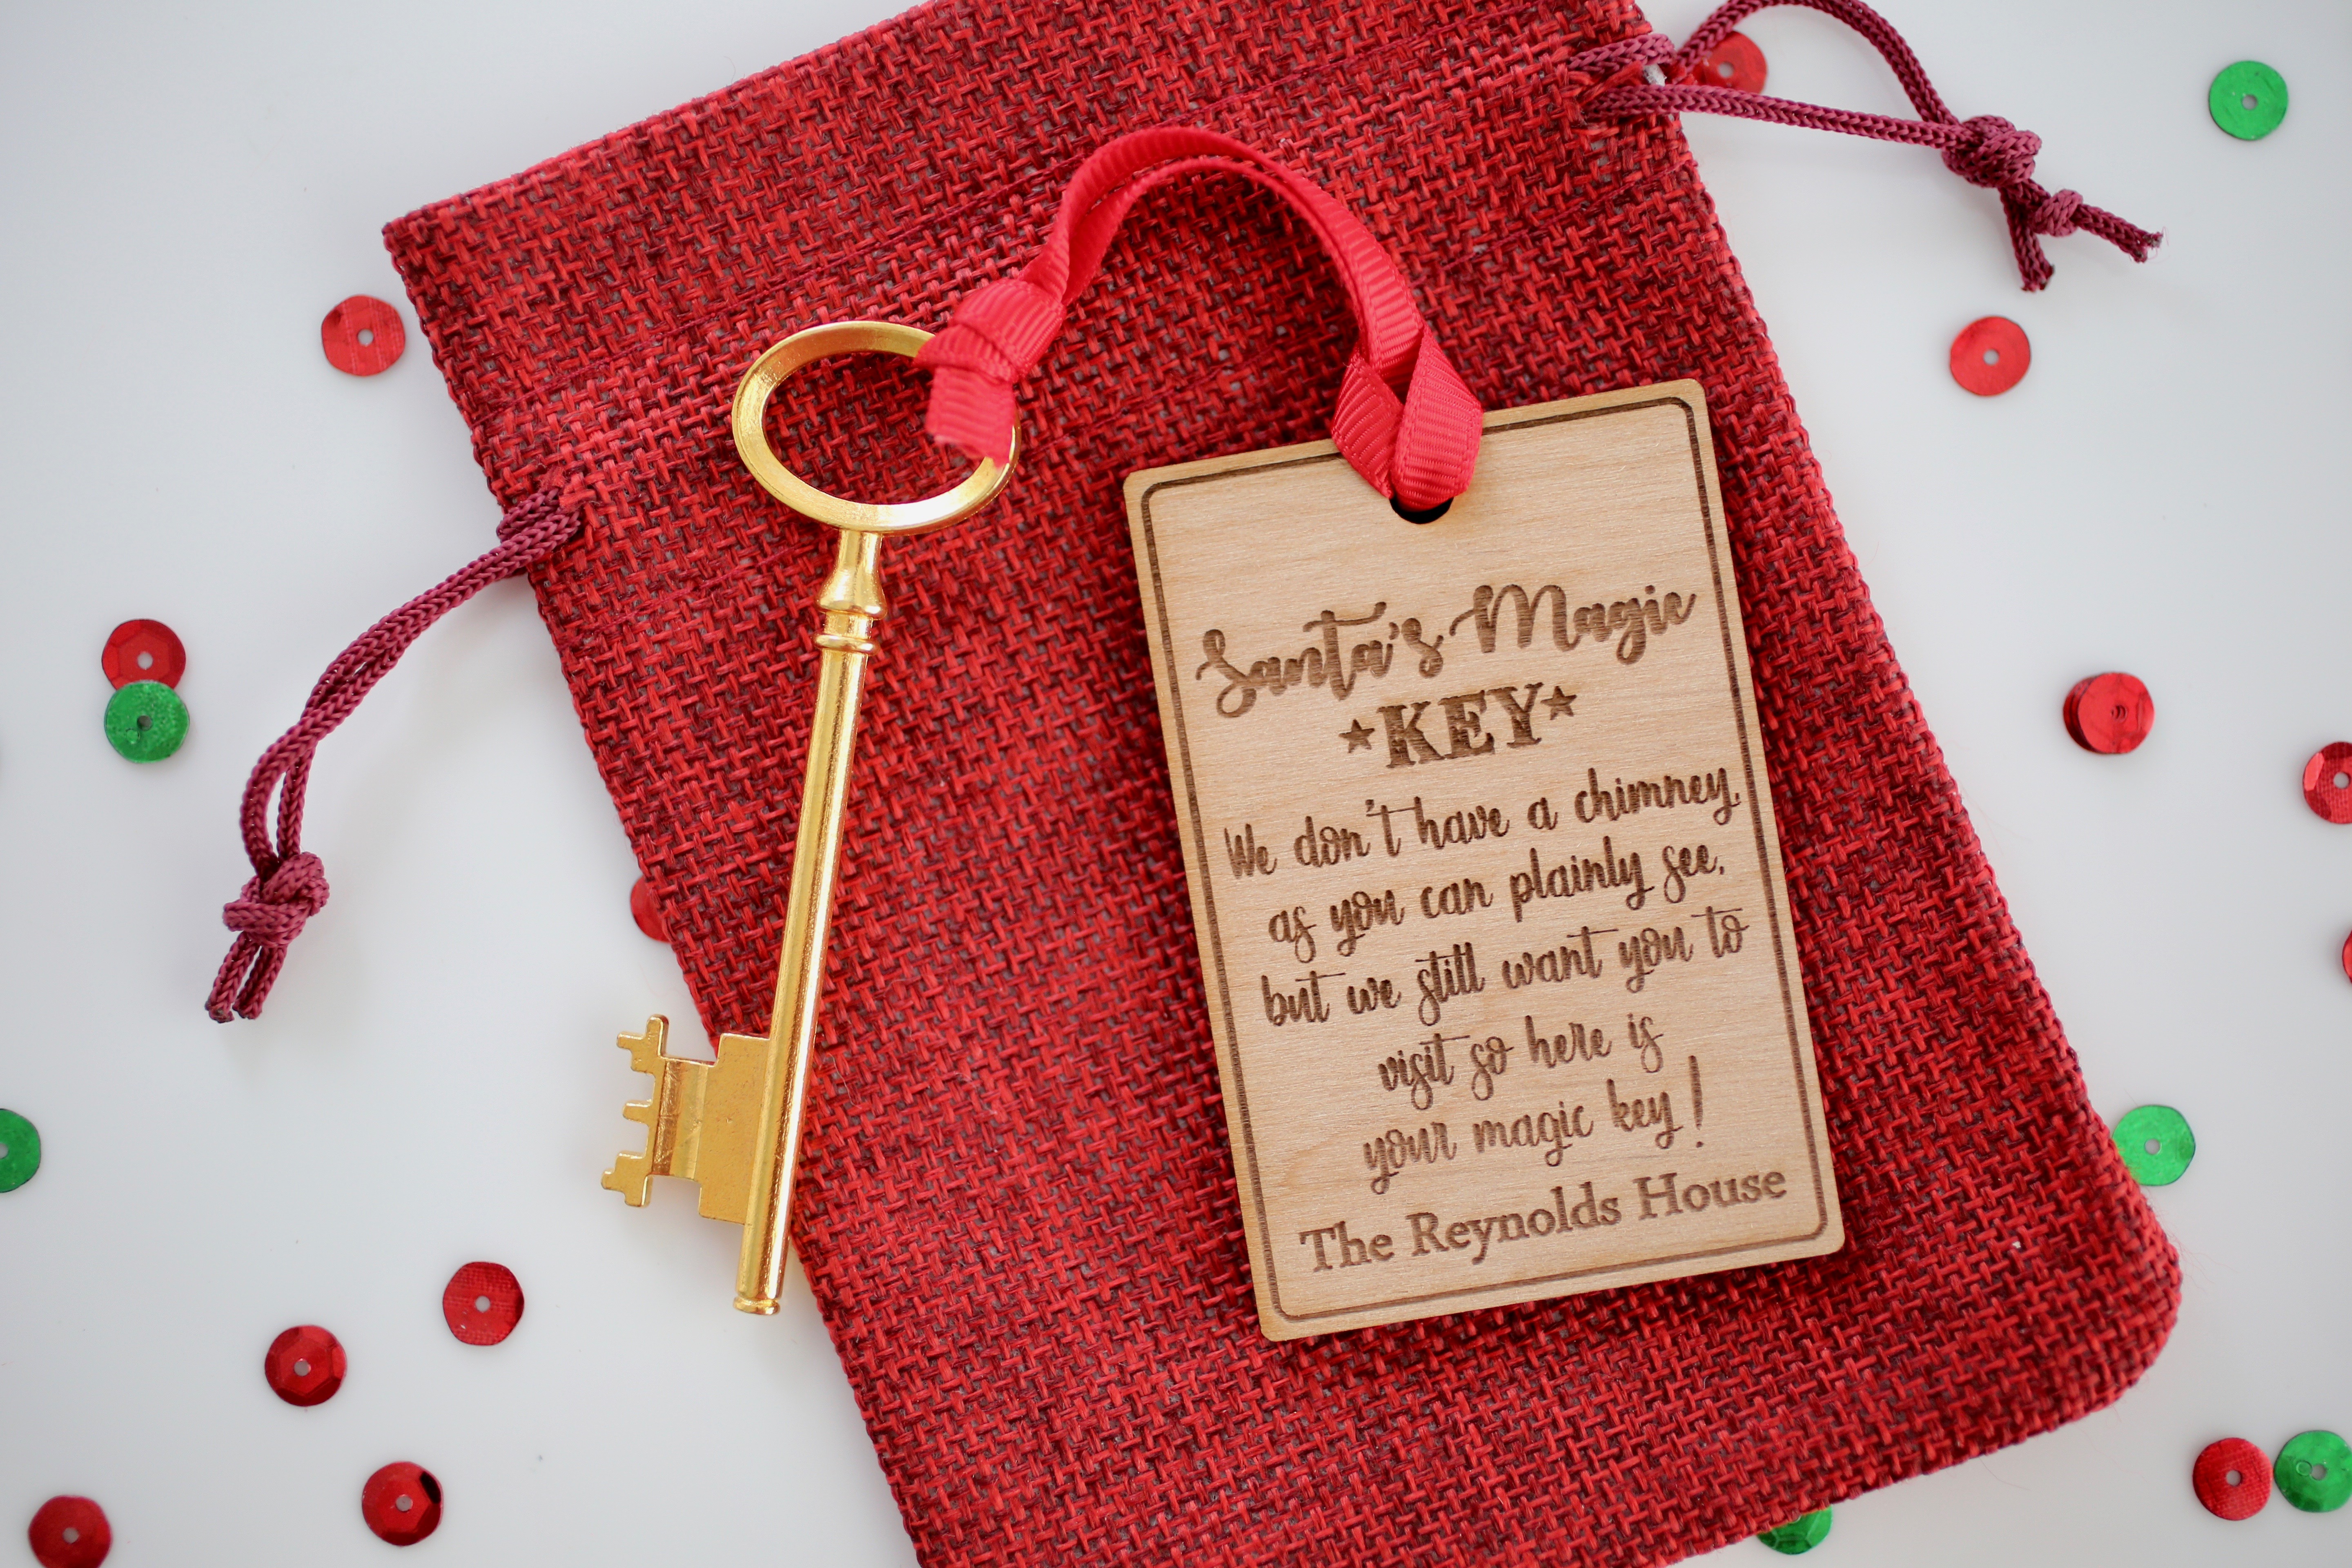 Santa's Key - No Chimney